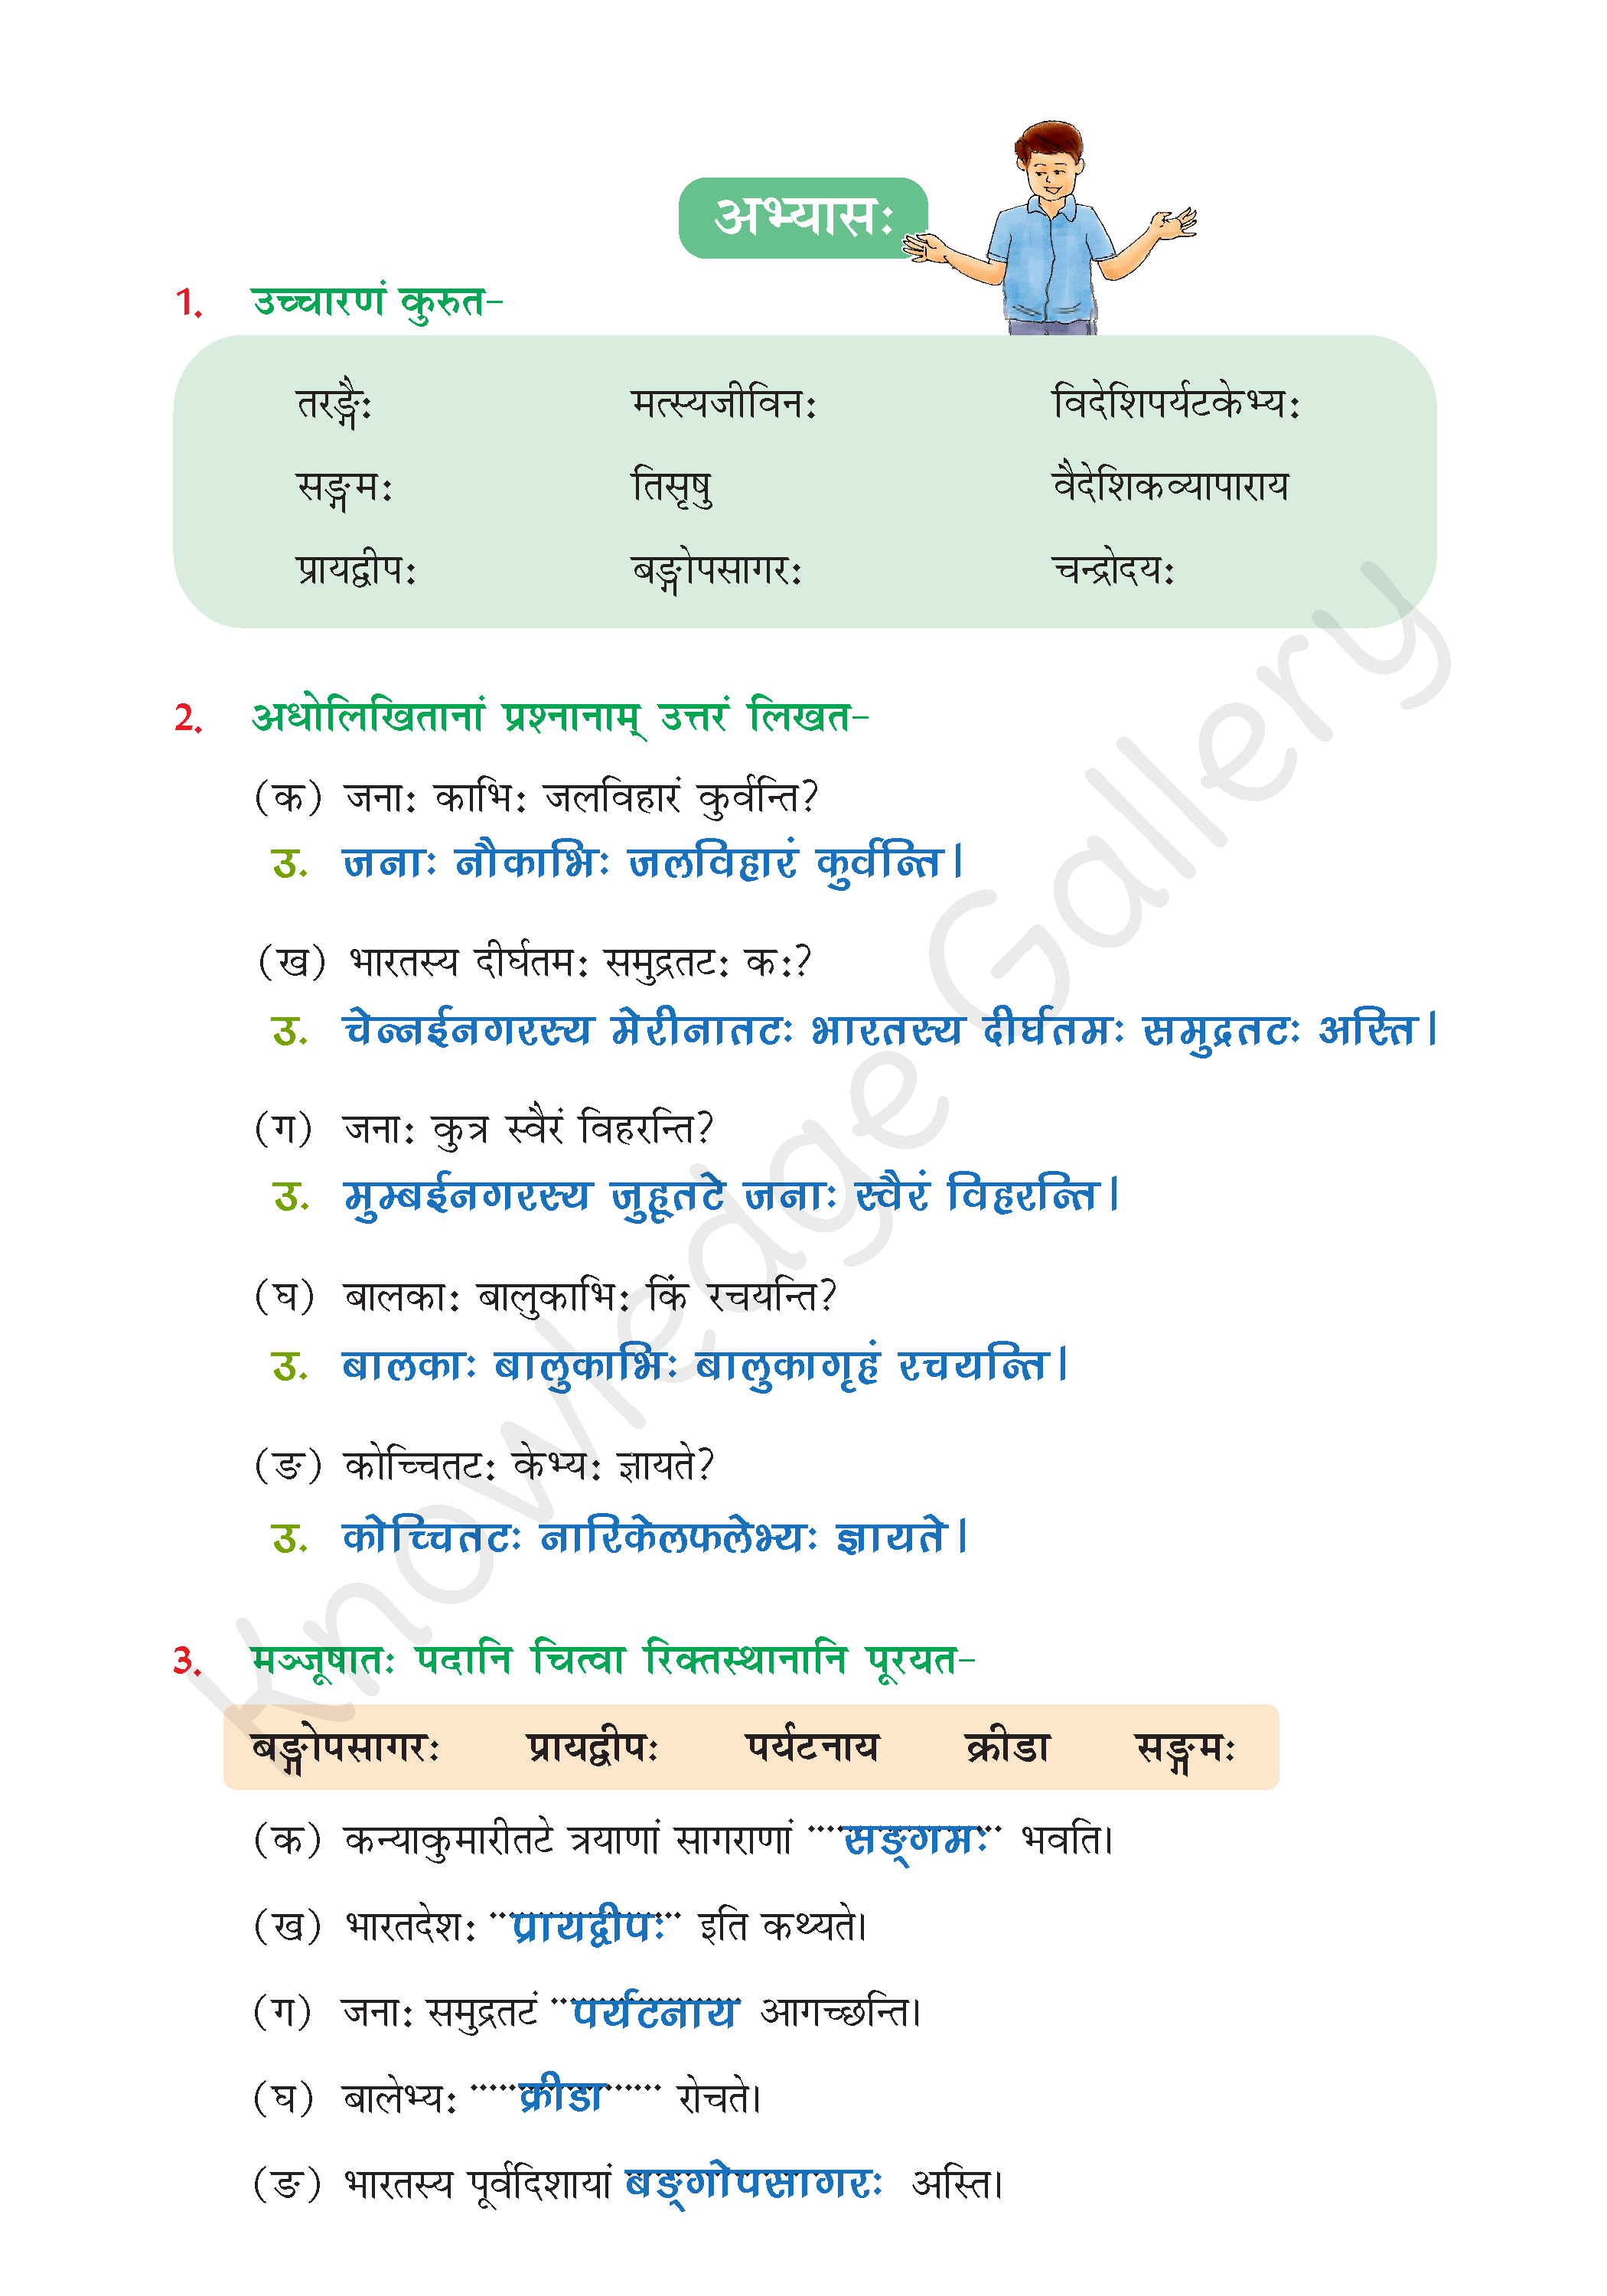 NCERT Solution For Class 6 Sanskrit Chapter 6 part 4